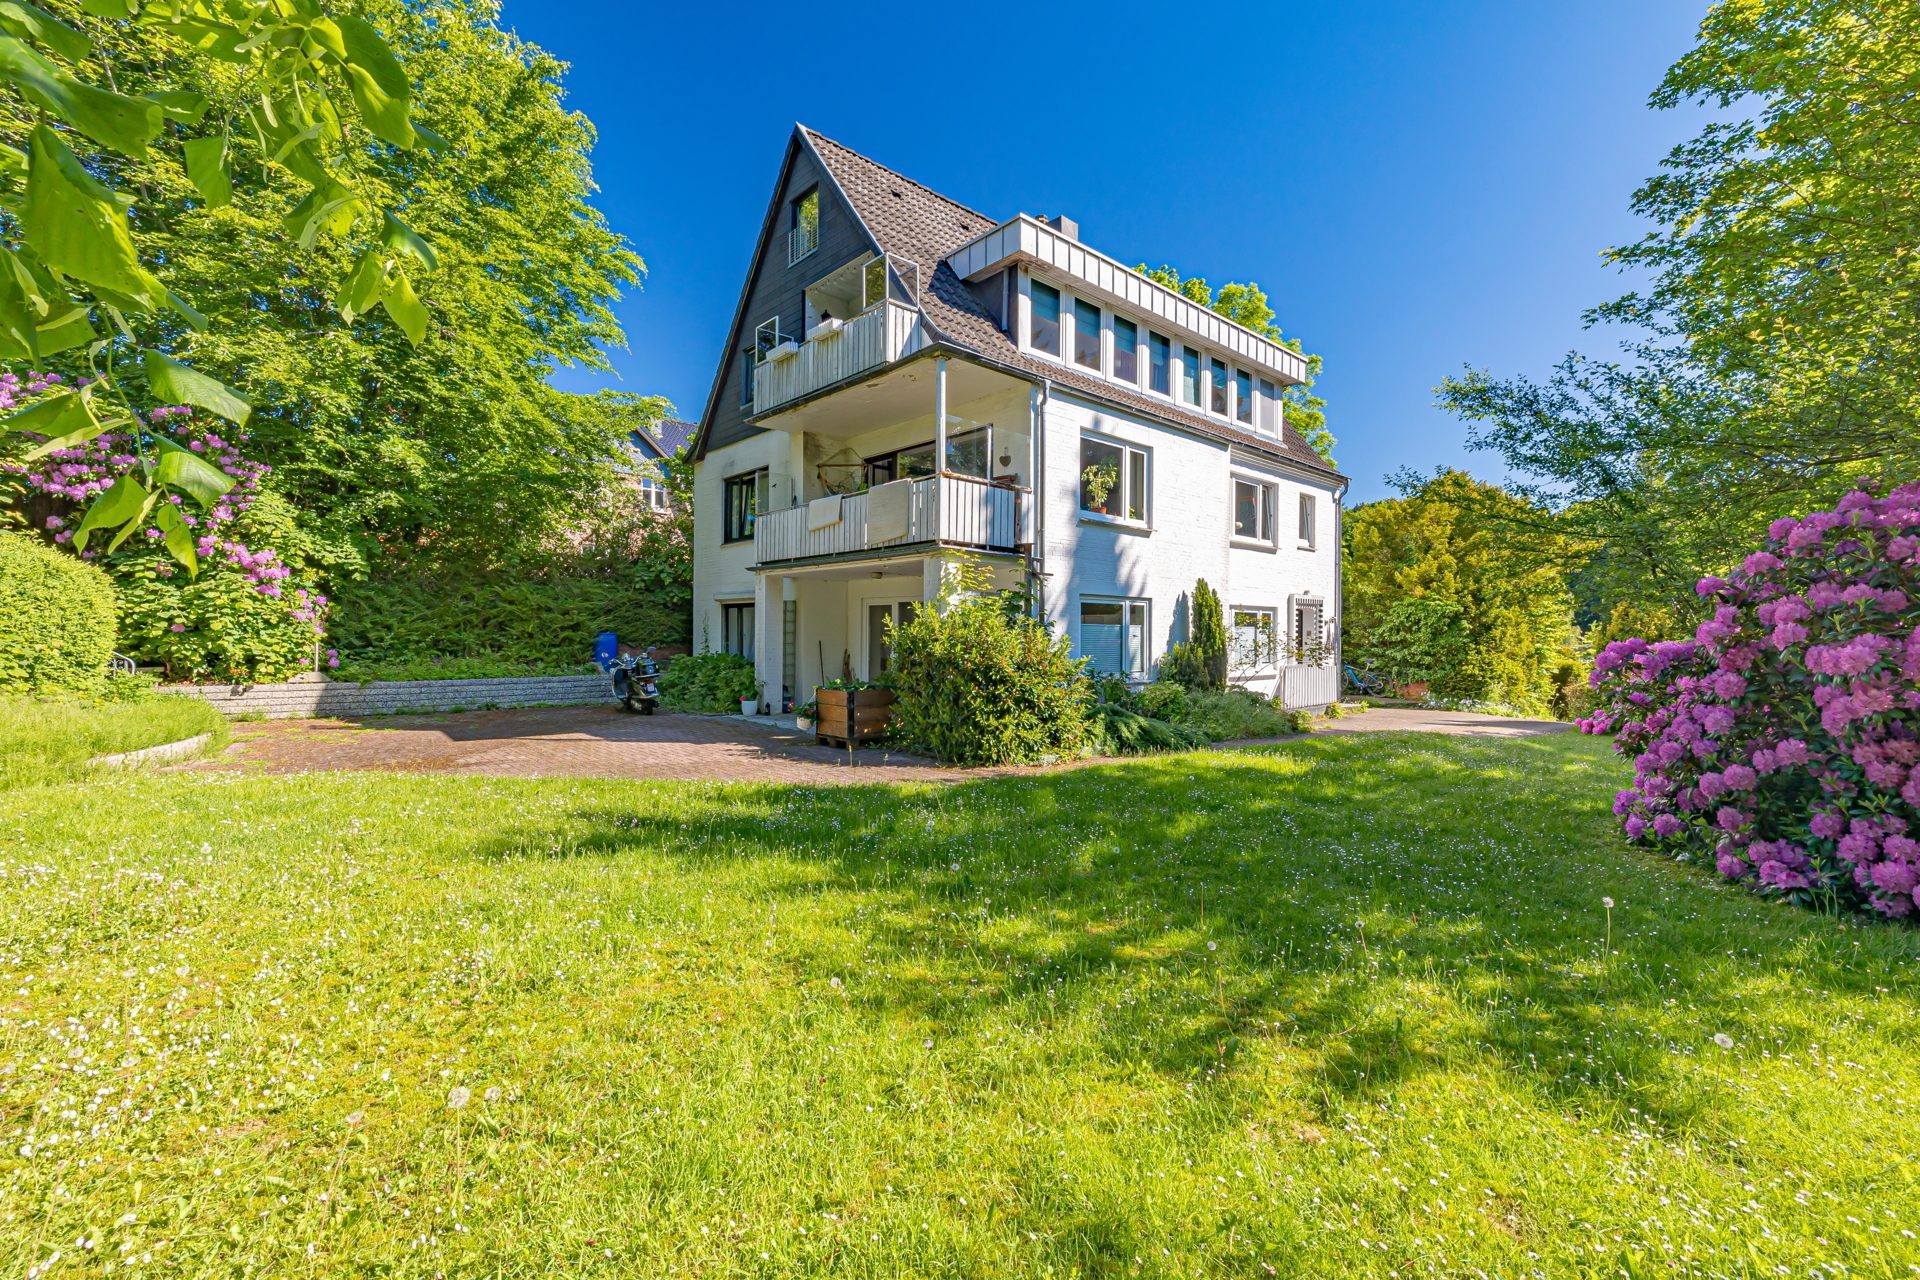 Immobilienangebot - Glücksburg (Ostsee) - Alle - MFH mit 3 WE in Glücksburg! Traumlage! 600m bis zum Strand, am Naturschutzgebiet, ruhig & zentral!